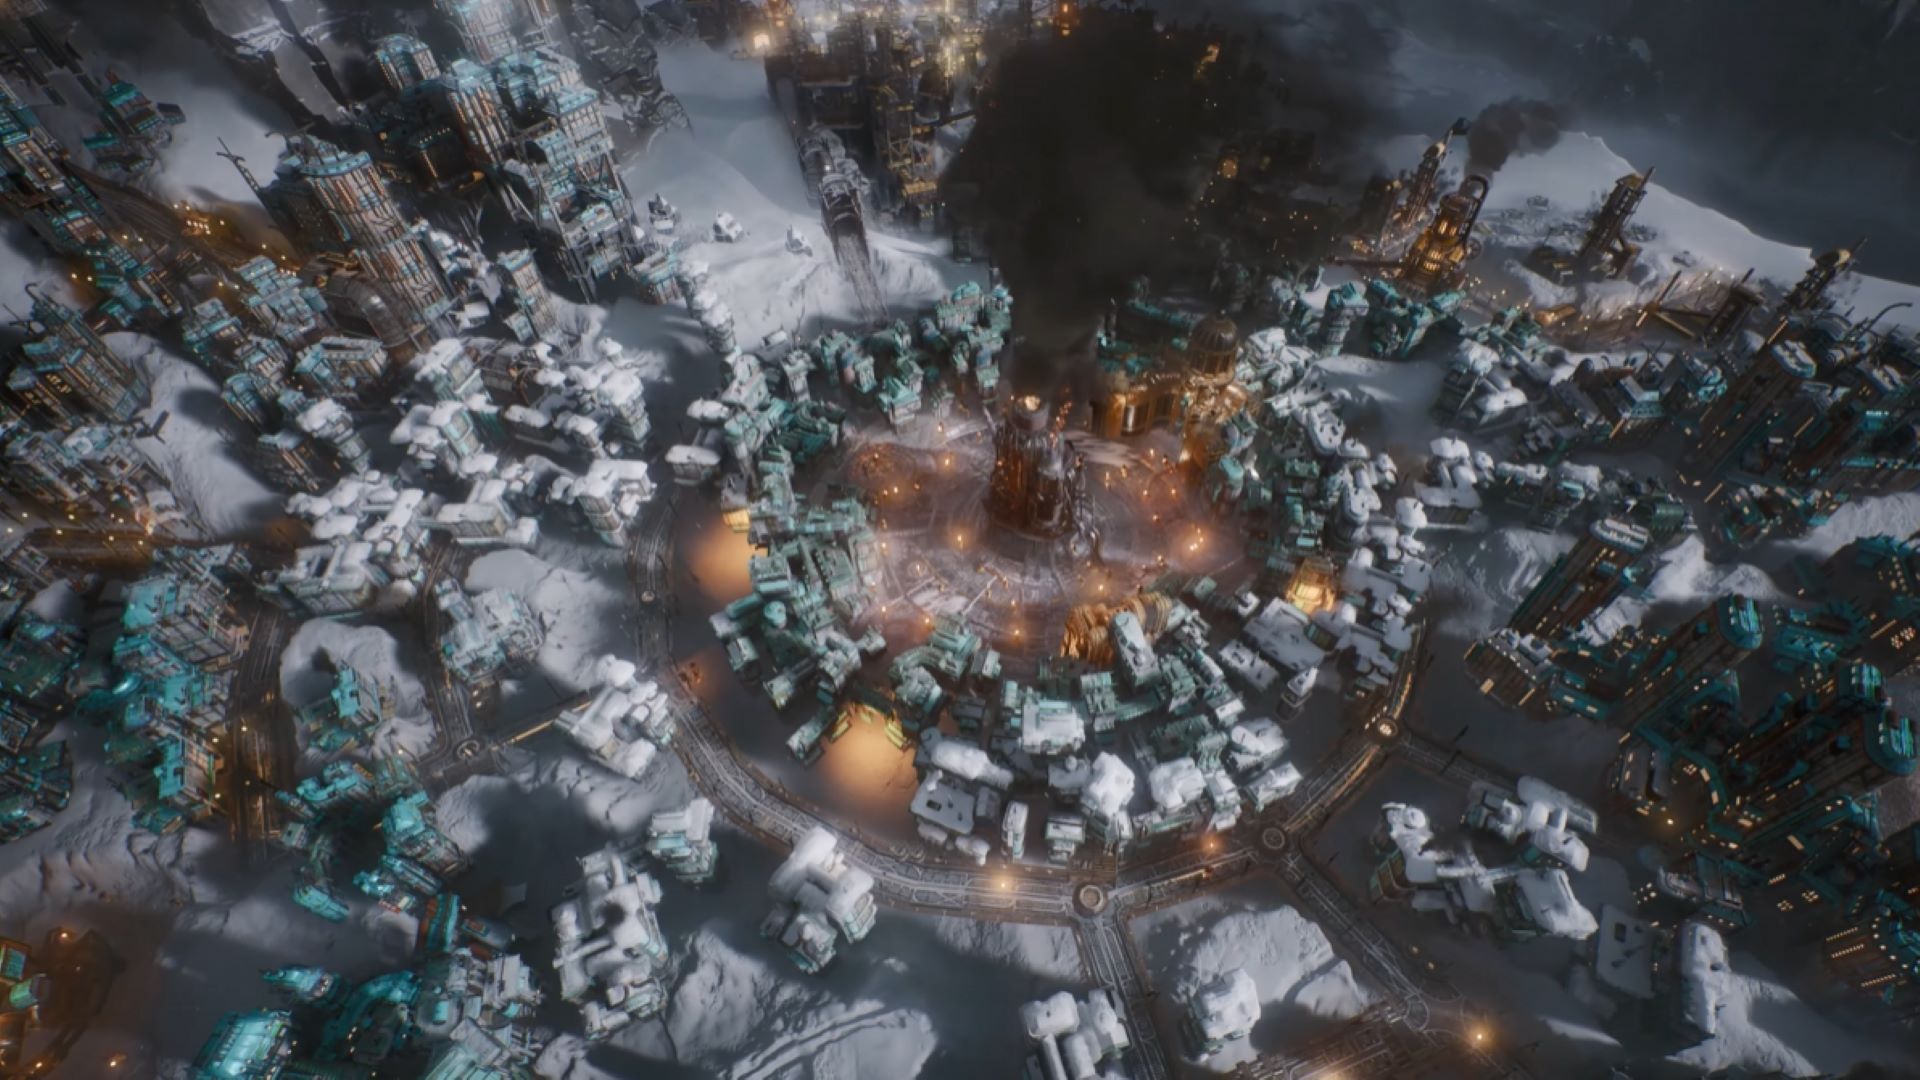 Бета-версия Frostpunk 2 скрывает ужасный сценарий, в котором все фракции градостроителей «вступают в войну», но до сих пор никто его не нашел